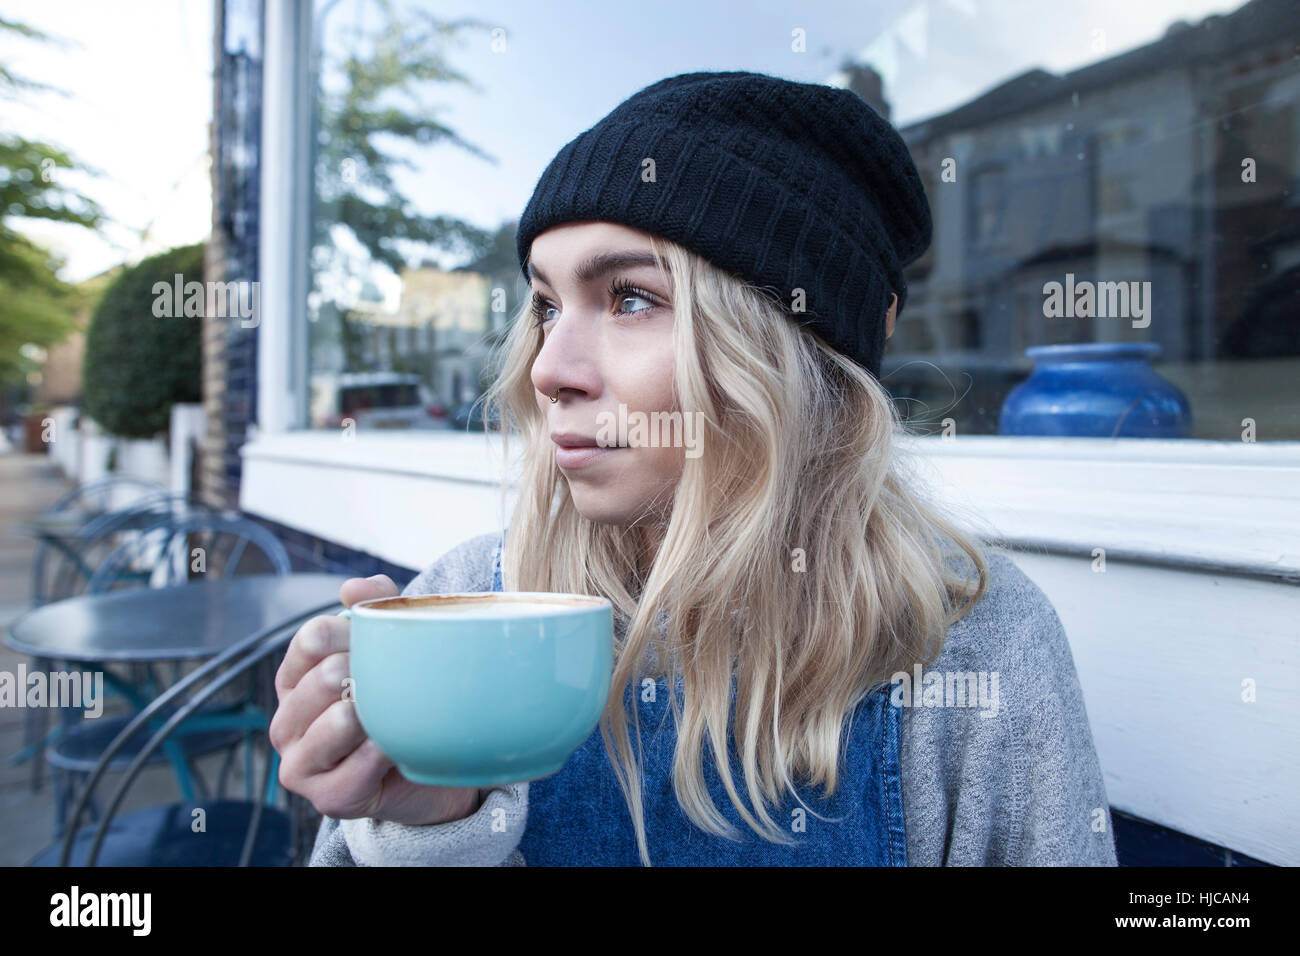 Mujer joven sentado fuera de la cafetería, beber una taza de té Foto de stock